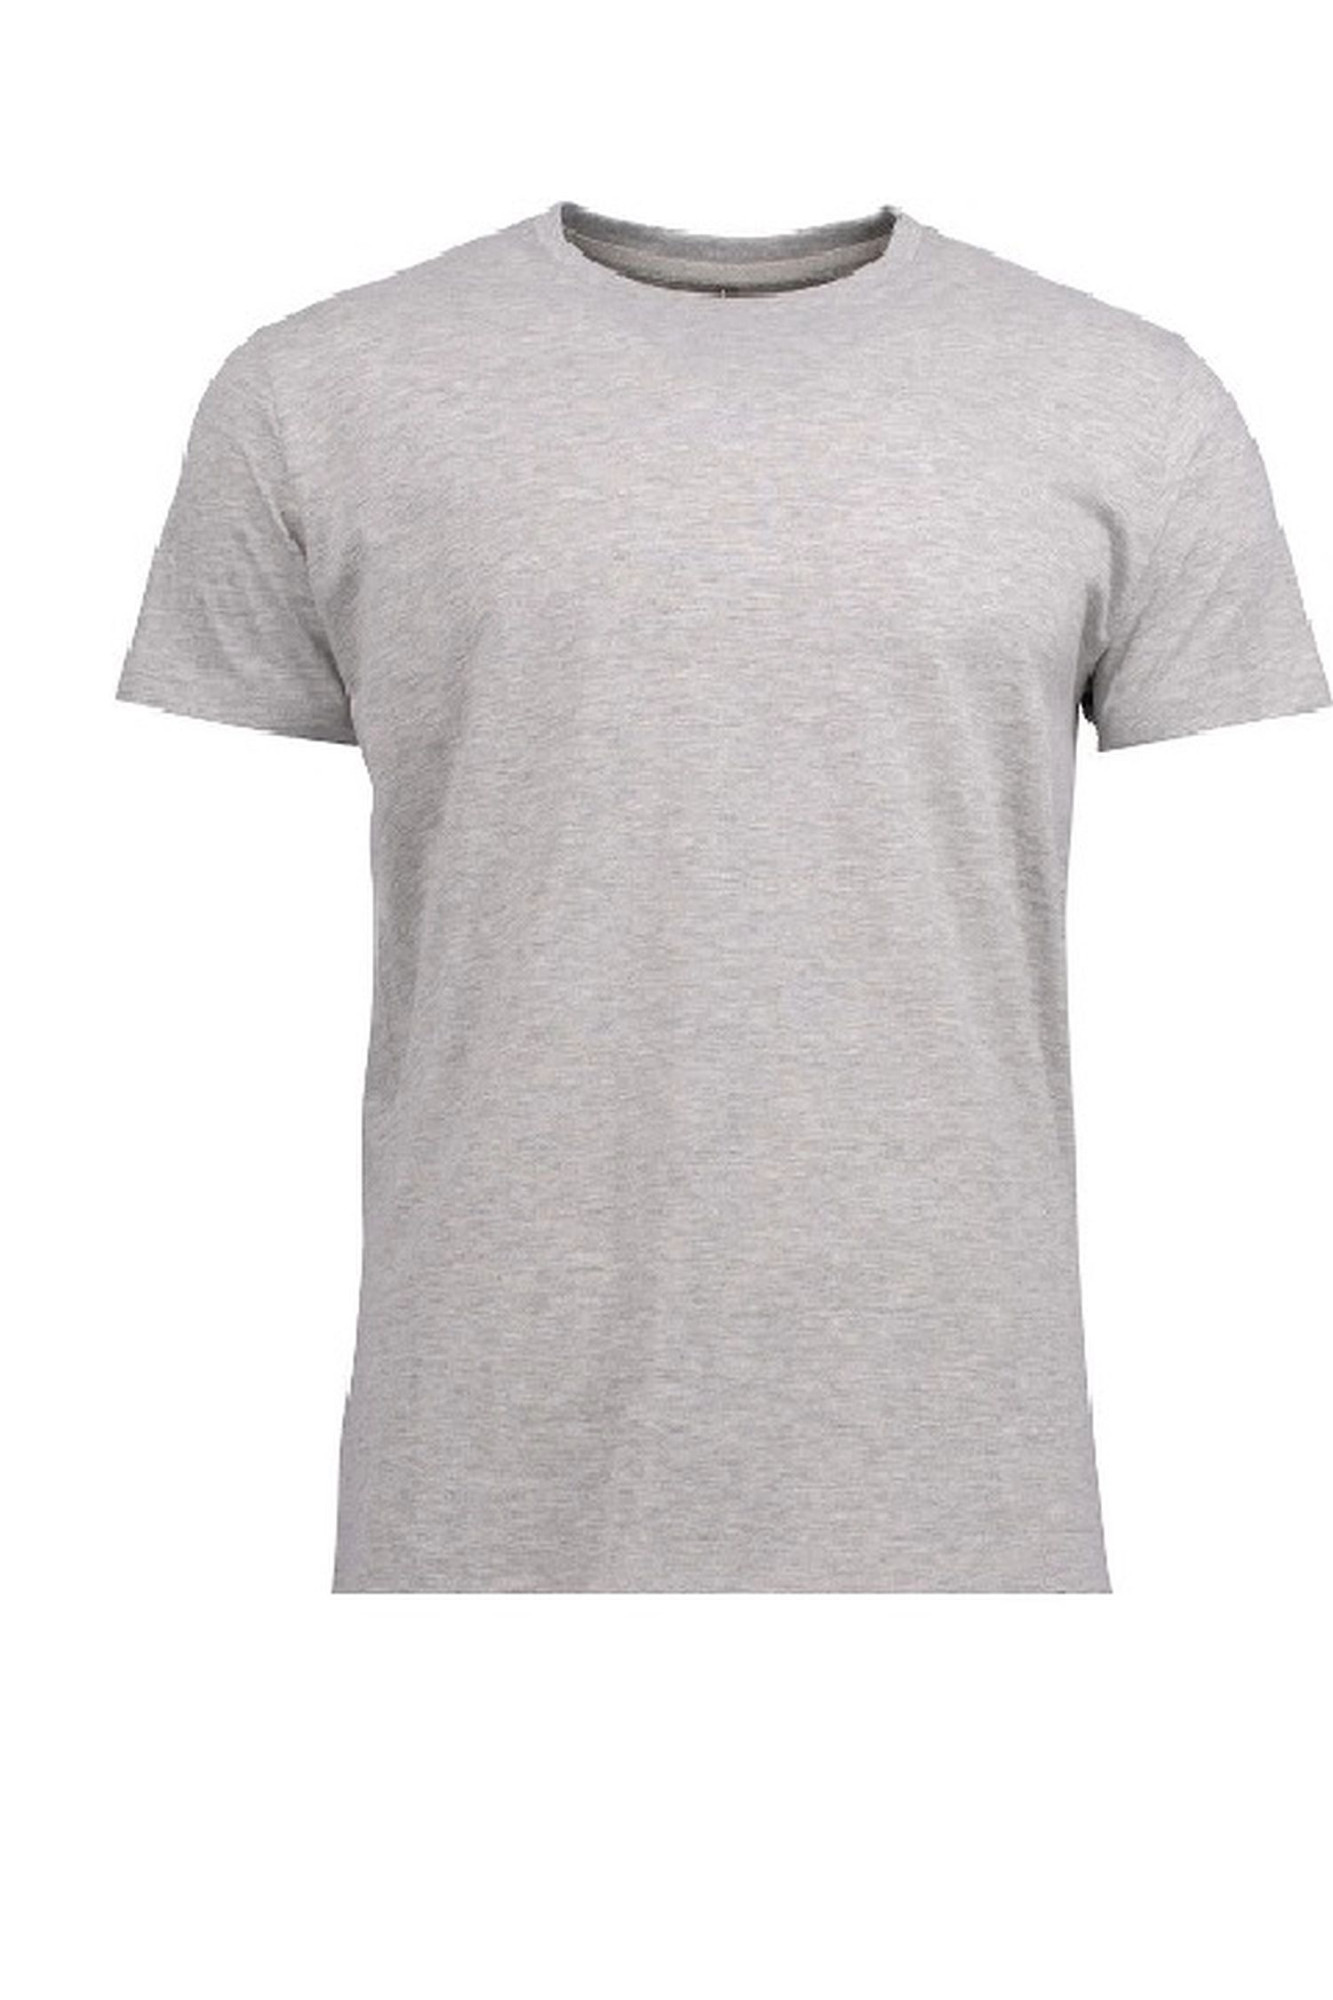 Pánské tričko 002 grey - NOVITI šedá L